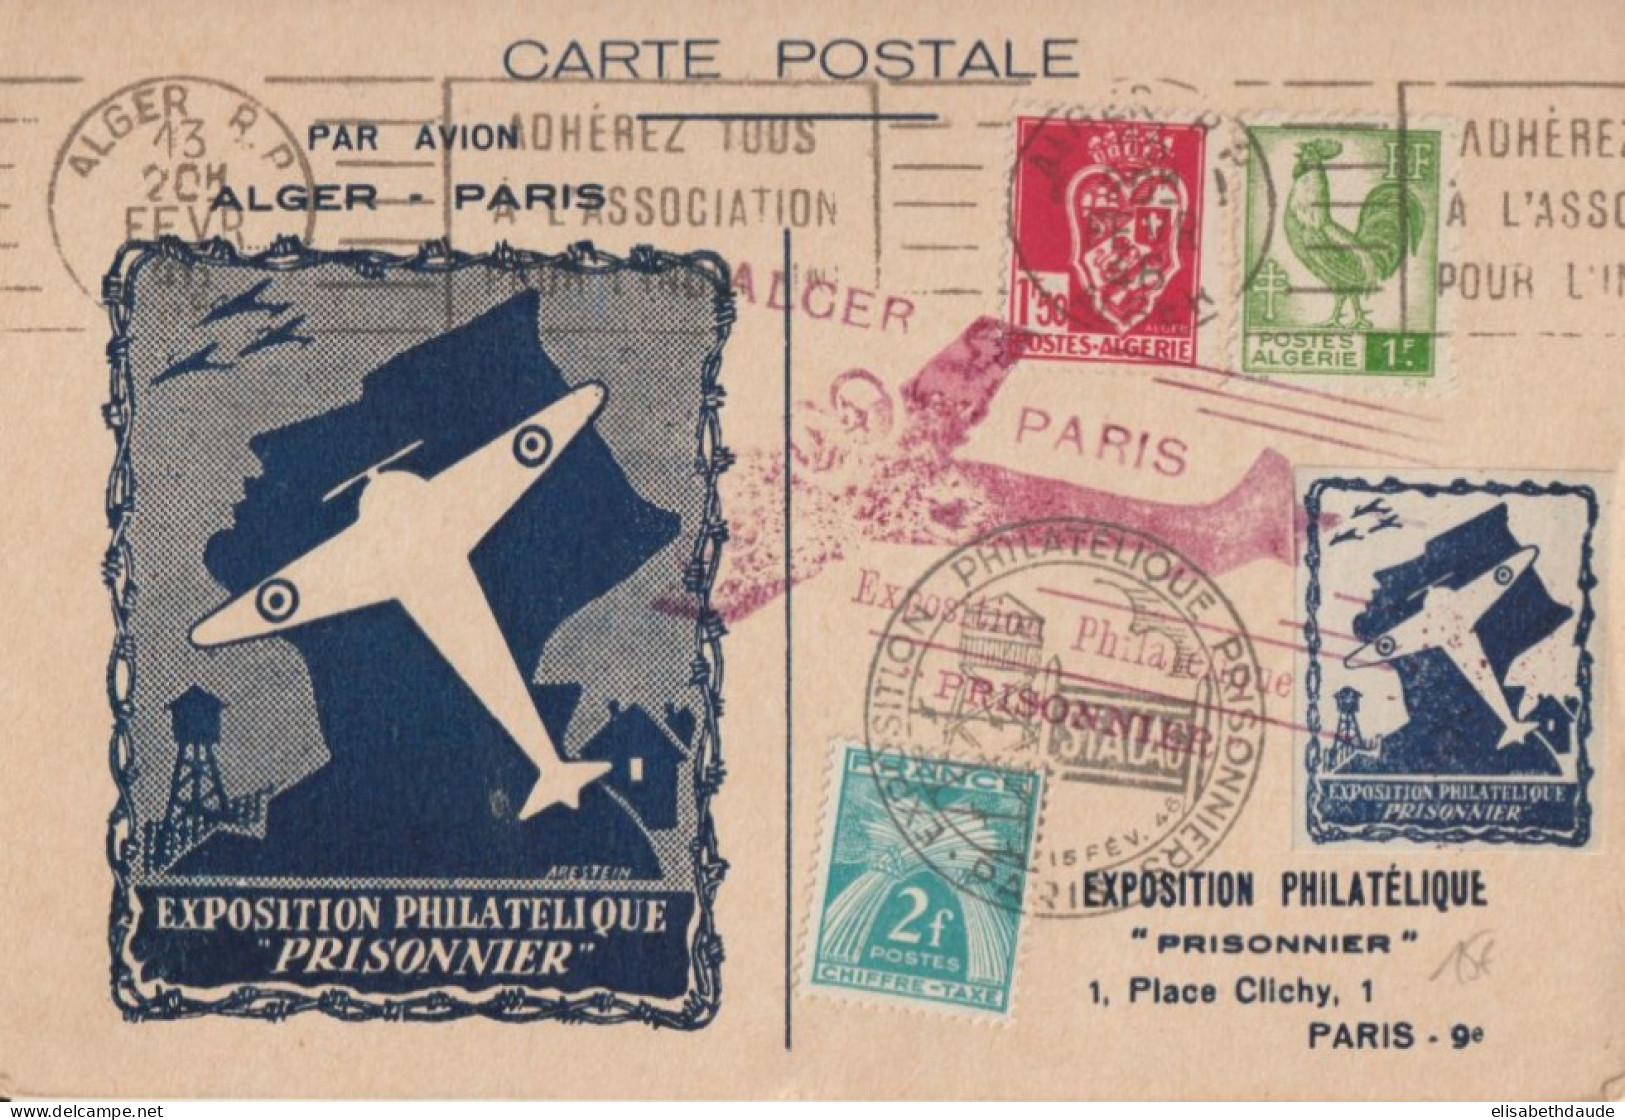 1945 - EXPO PRISONNIERS GUERRE - VIGNETTE AVIATION Sur CARTE VOL AERIEN ALGER à PARIS ! - TAXE GERBES - Luftfahrt